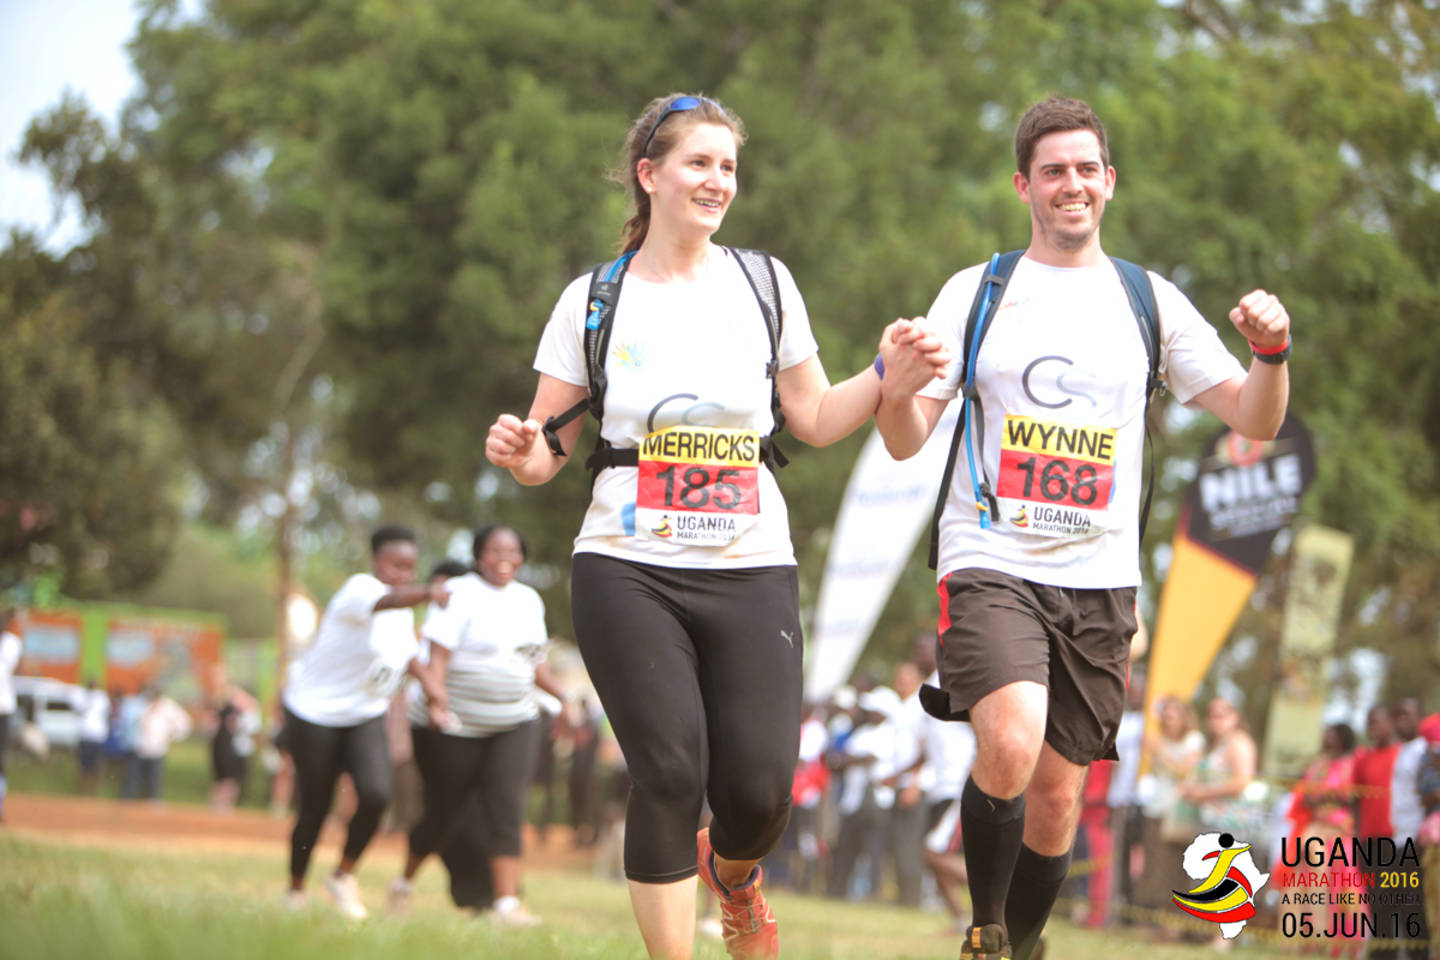 Philippa and husband-to-be Steven running the Uganda Half Marathon